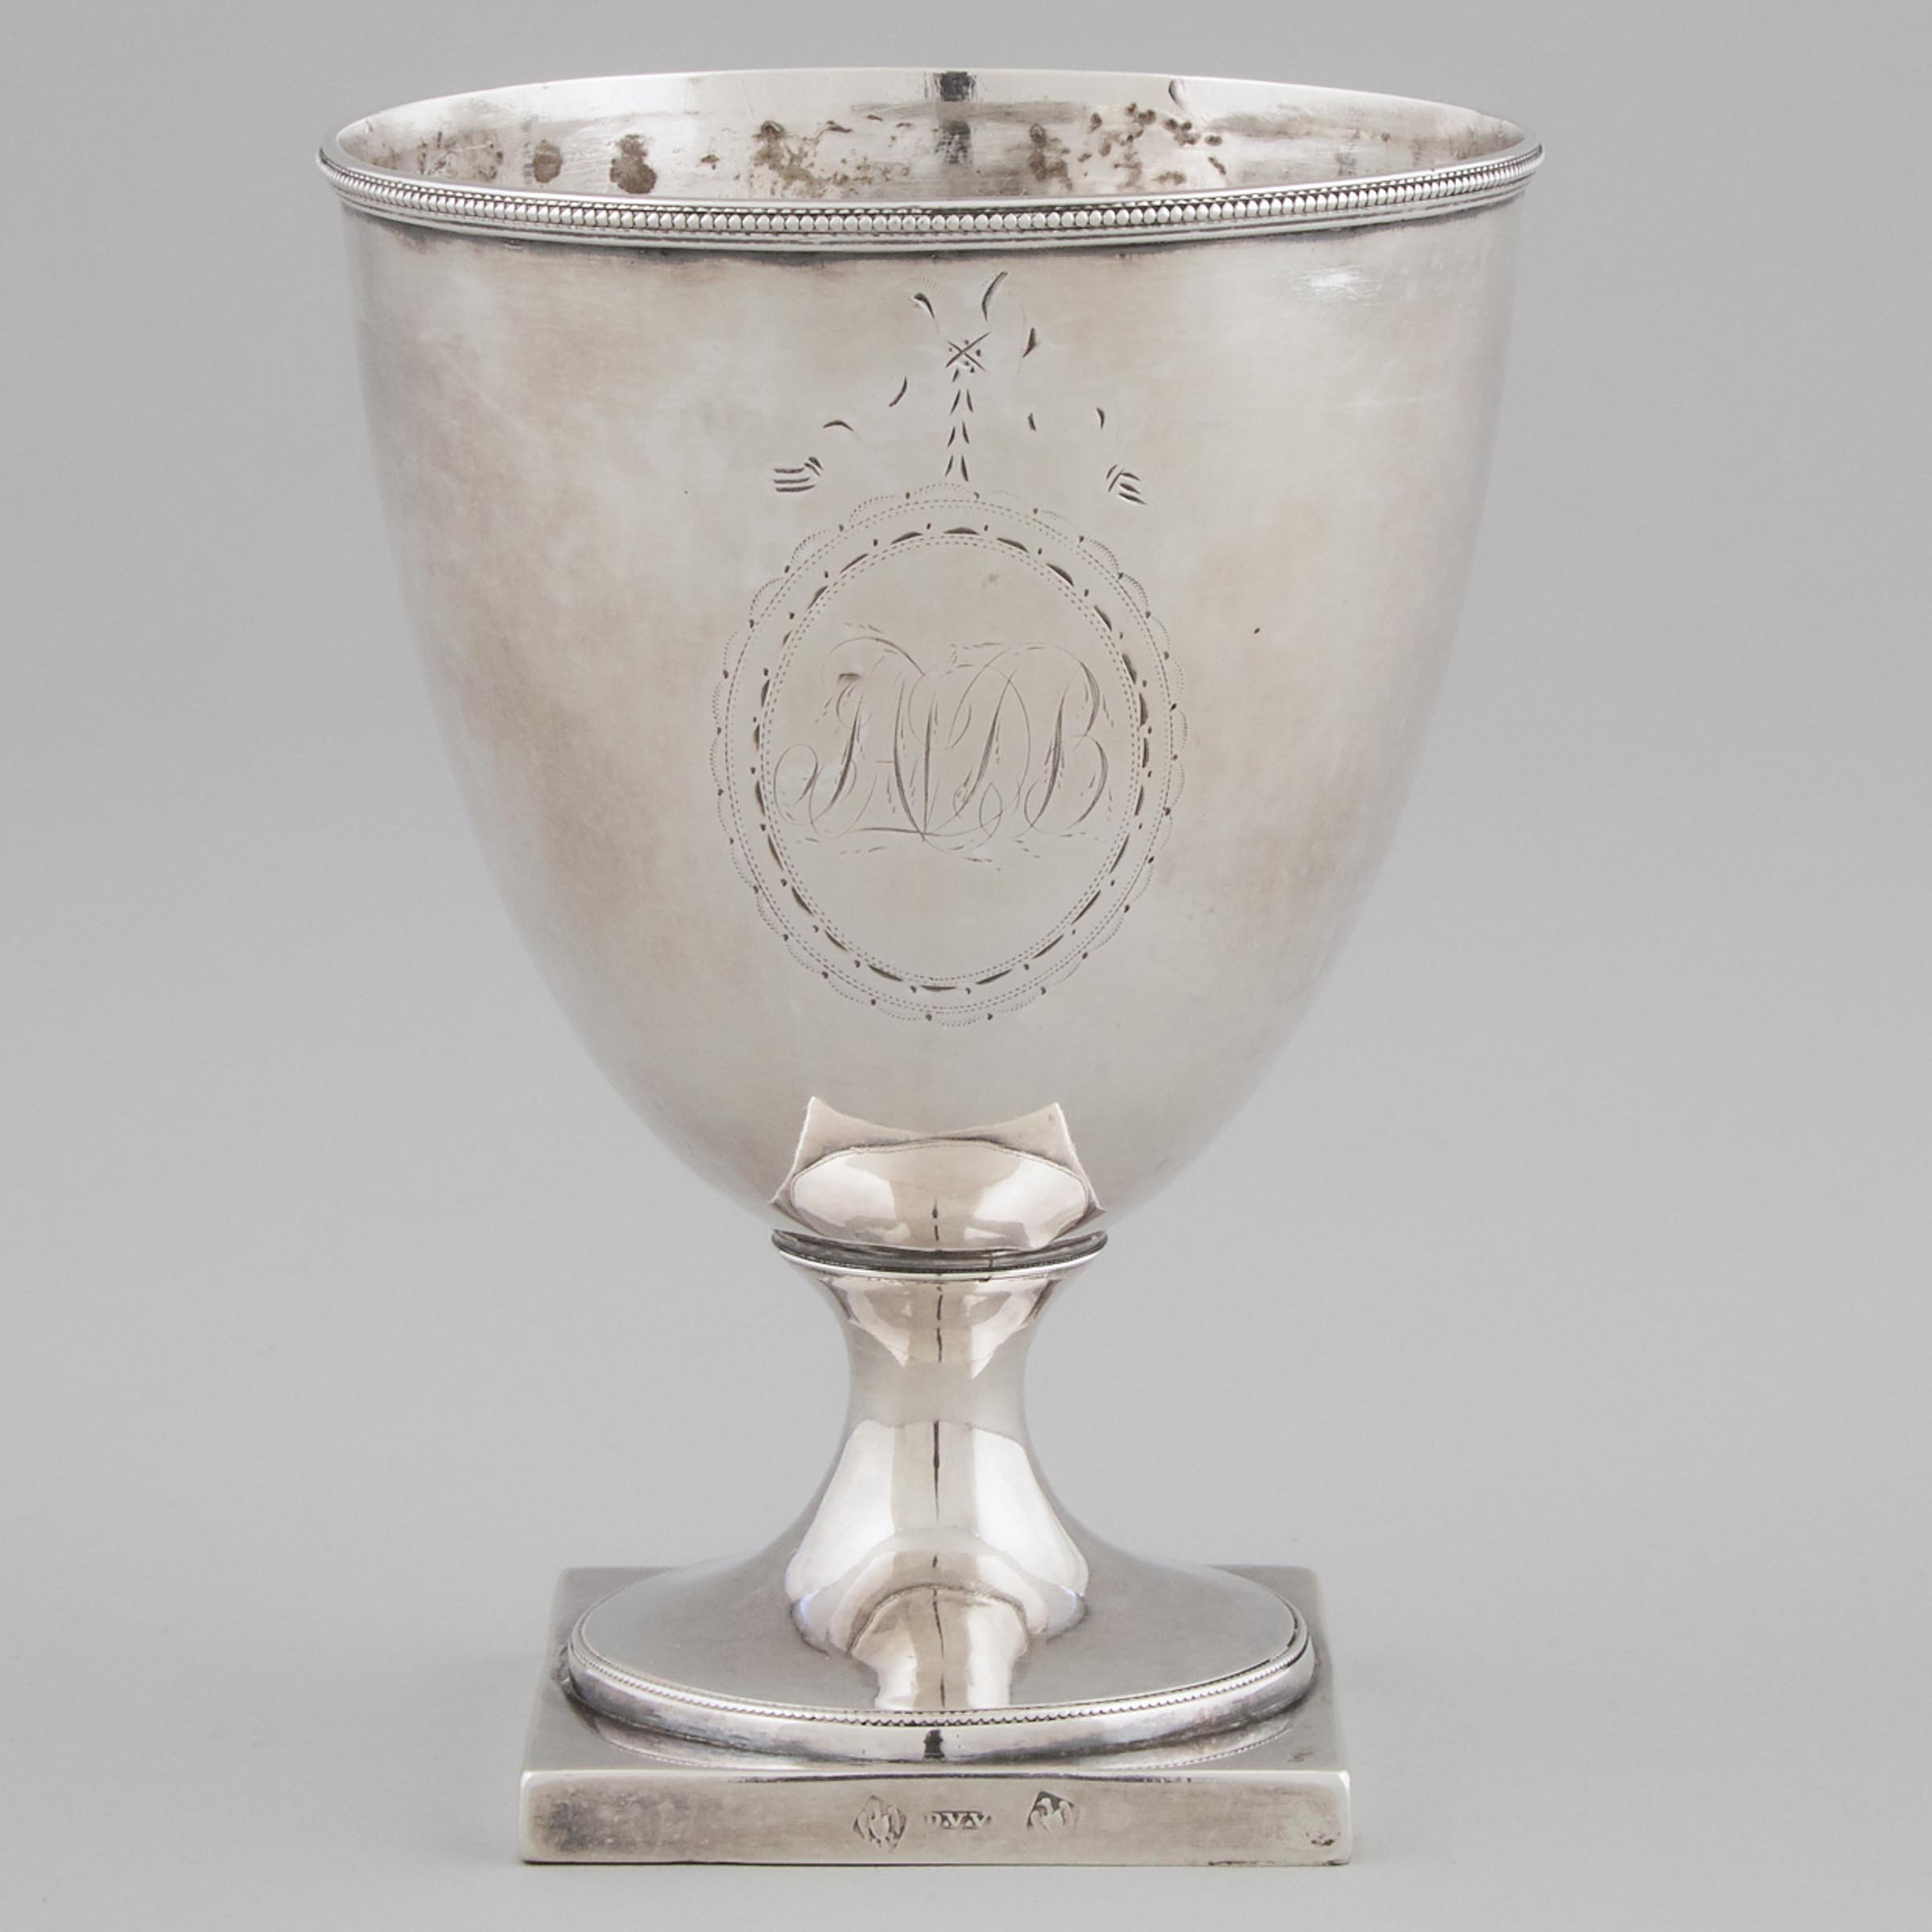 American Silver Sugar Vase, Daniel Van Voorhis, Philadephia, Pa., c.1790